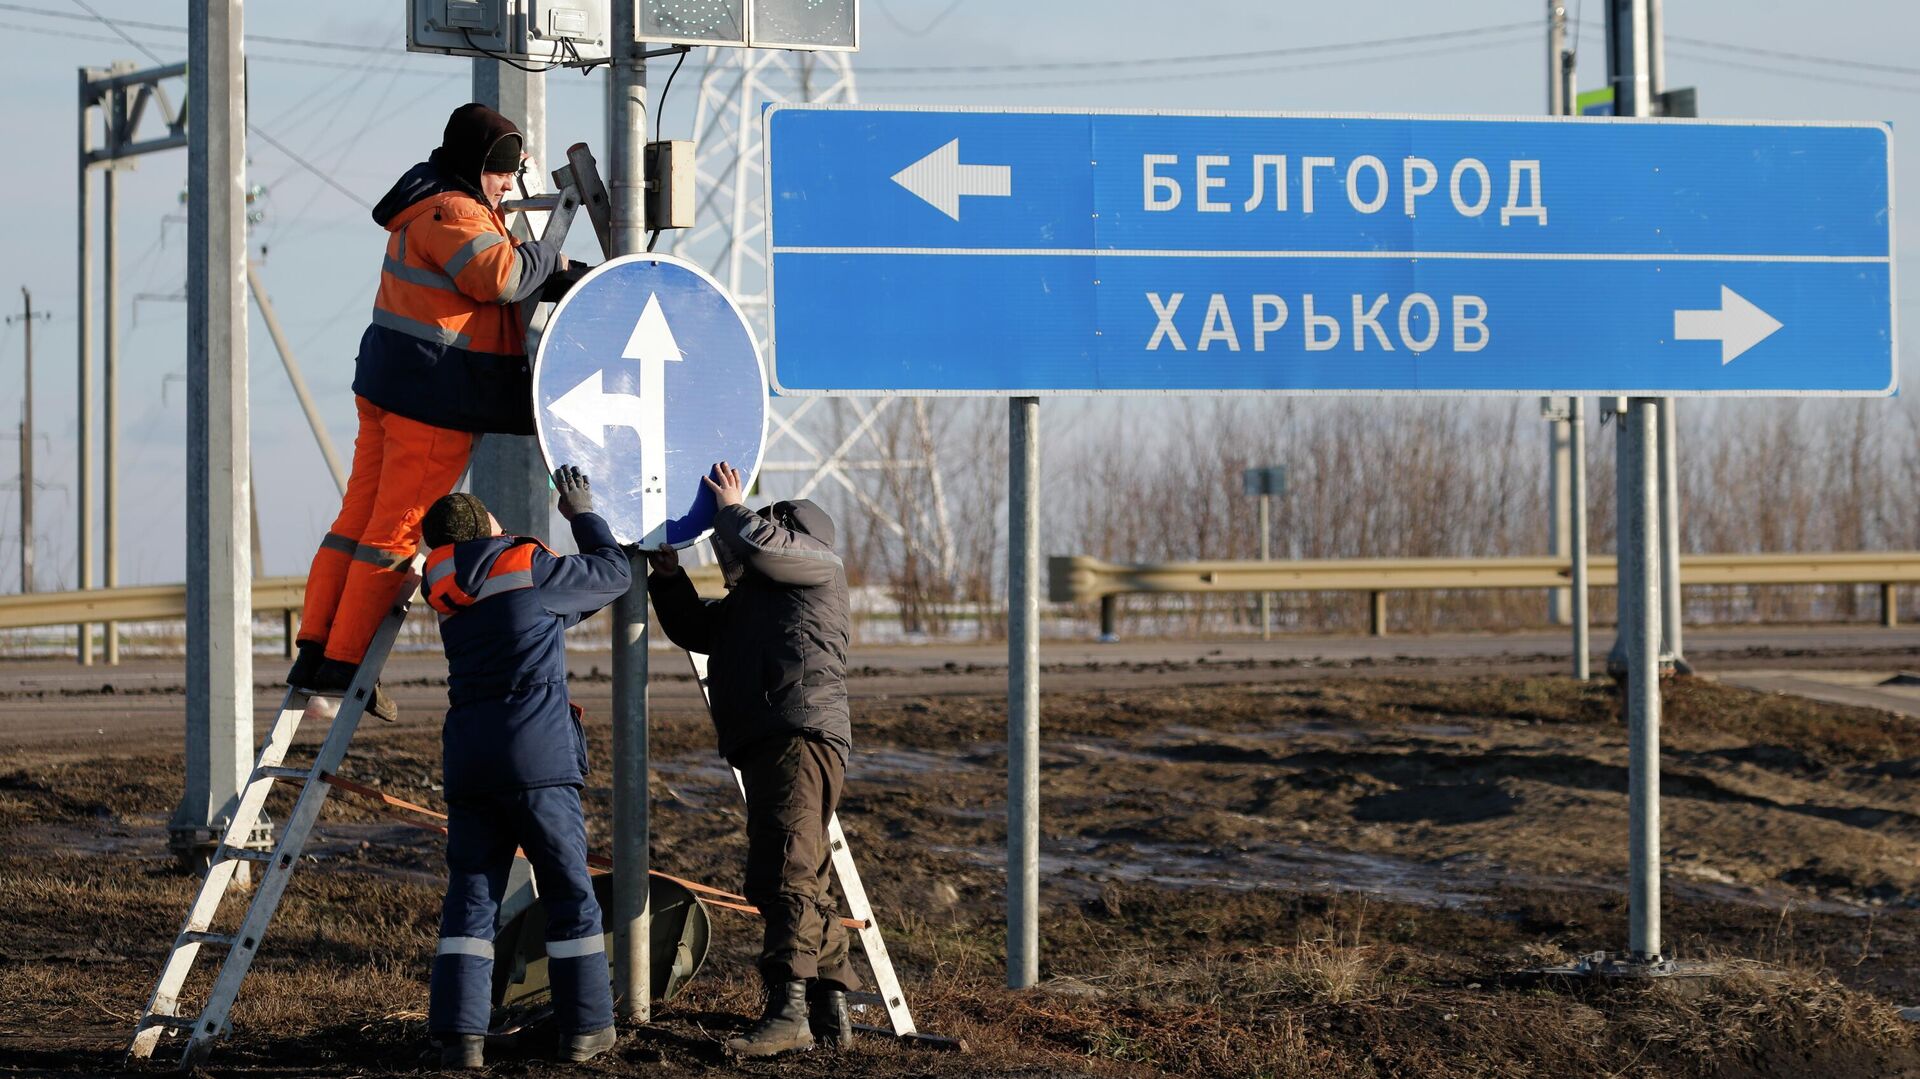 Белгородские власти объяснили земляные работы у границы с Украиной - РИА Новости, 06.04.2022